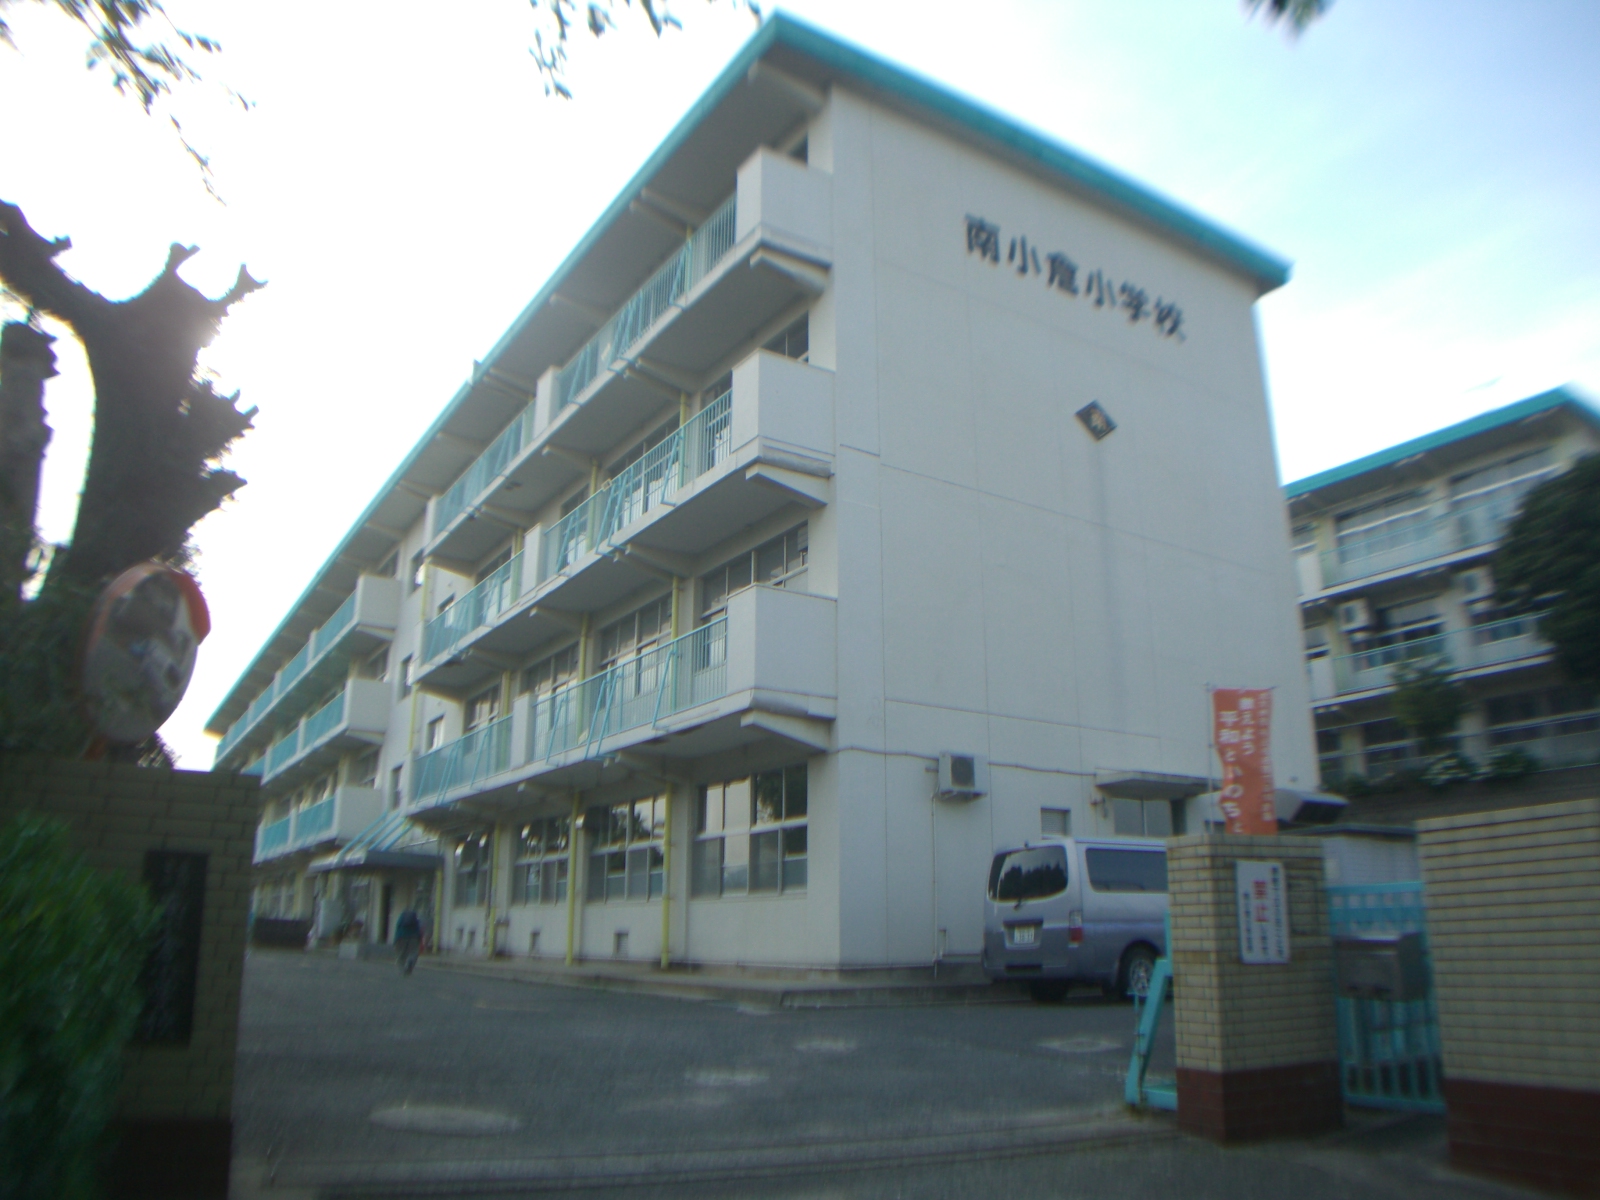 Primary school. 662m to Kitakyushu Minami Kokura elementary school (elementary school)